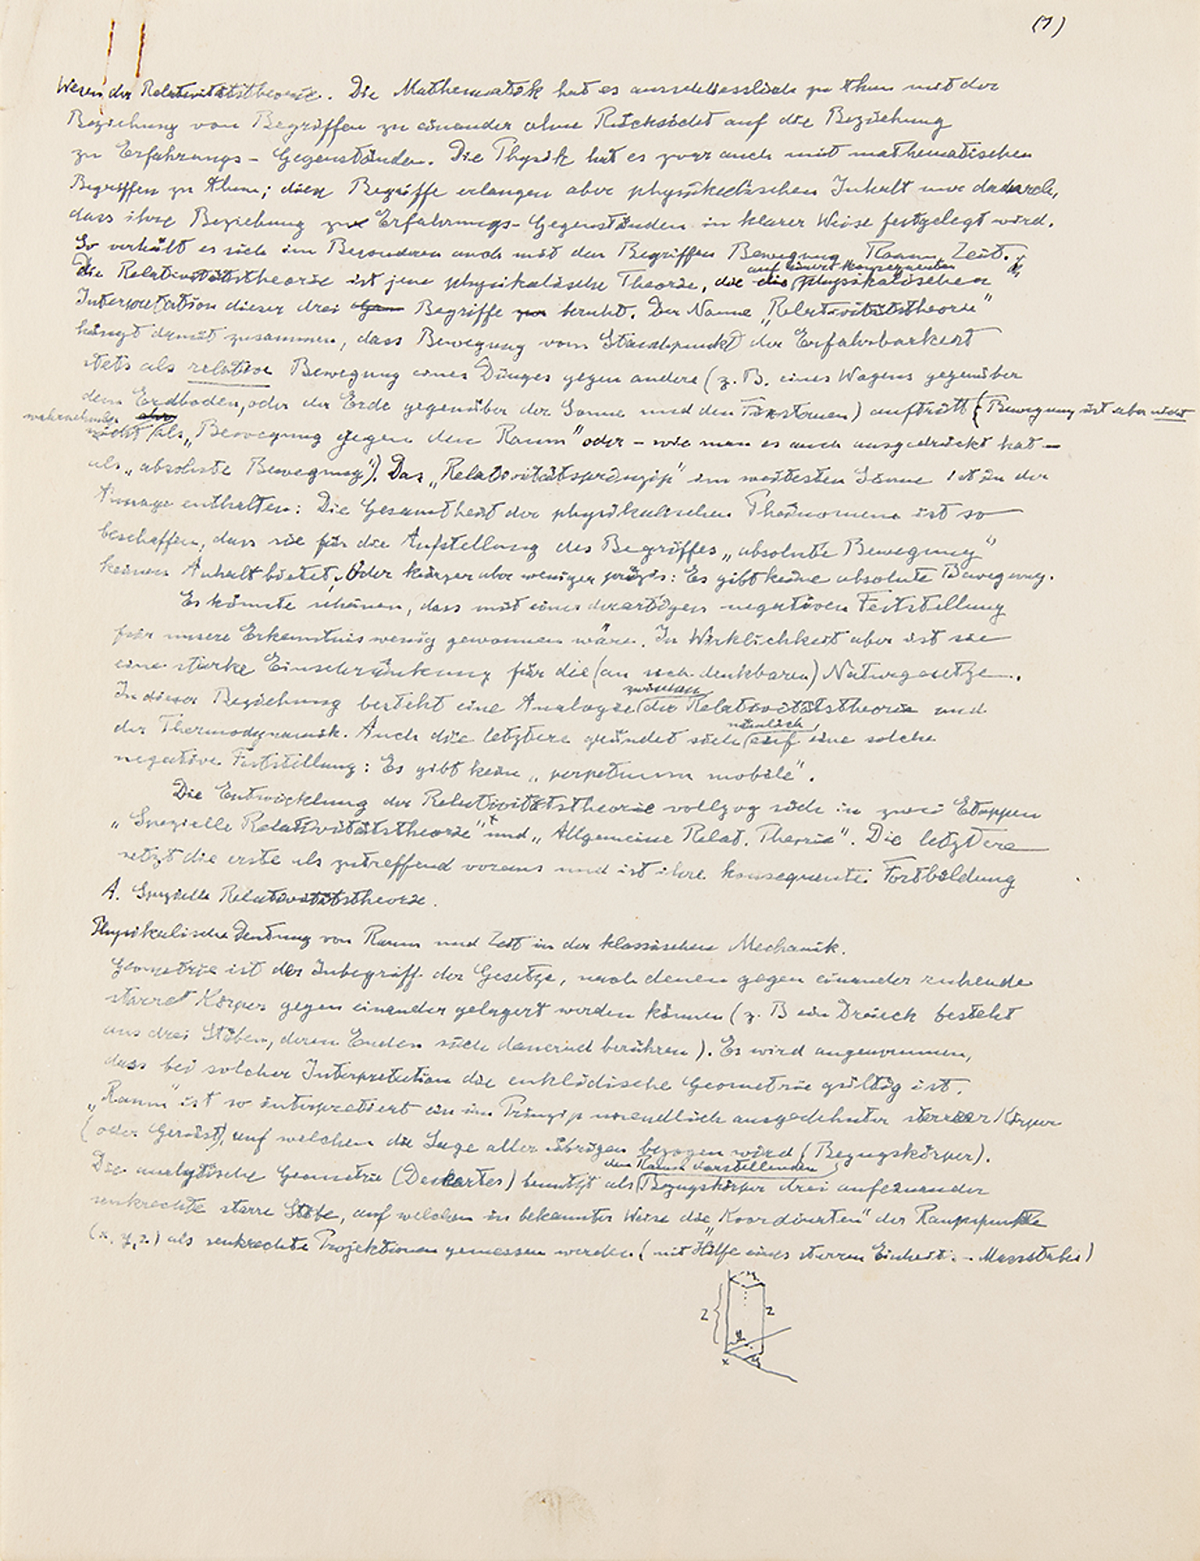 Manuscrito do ensaio de Einstein sobre a Teoria da Relatividade deve ser leiloado por R$ 1,7 milhão